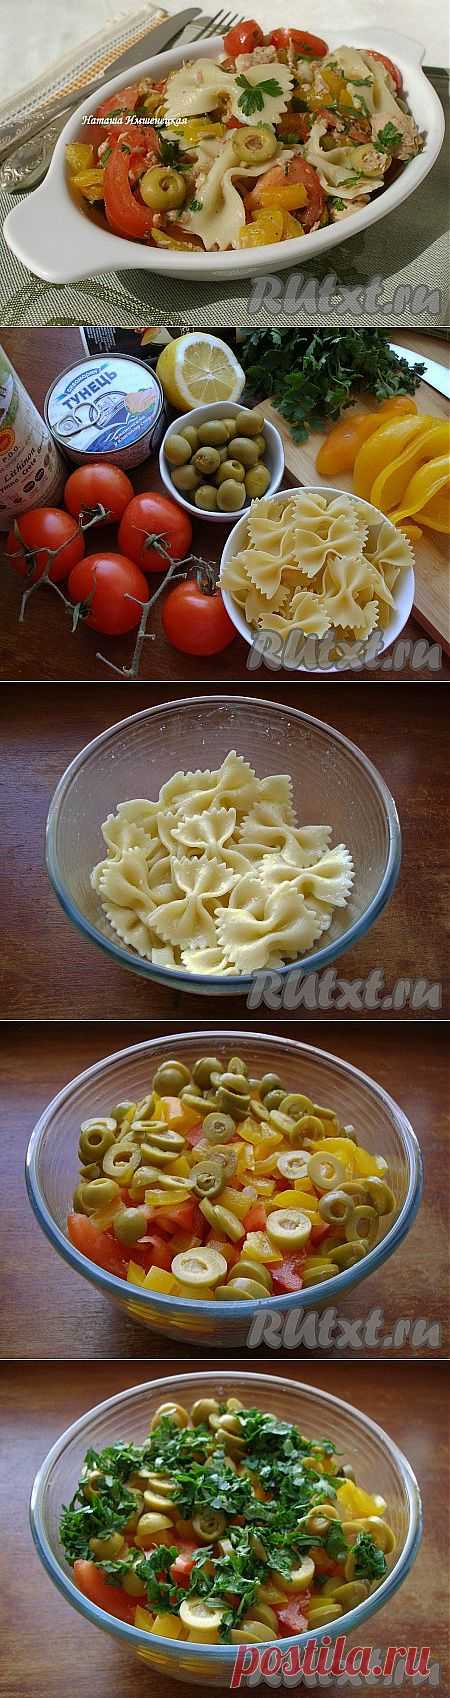 Рецепт салата с макаронами (рецепт с ) | RUtxt.ru